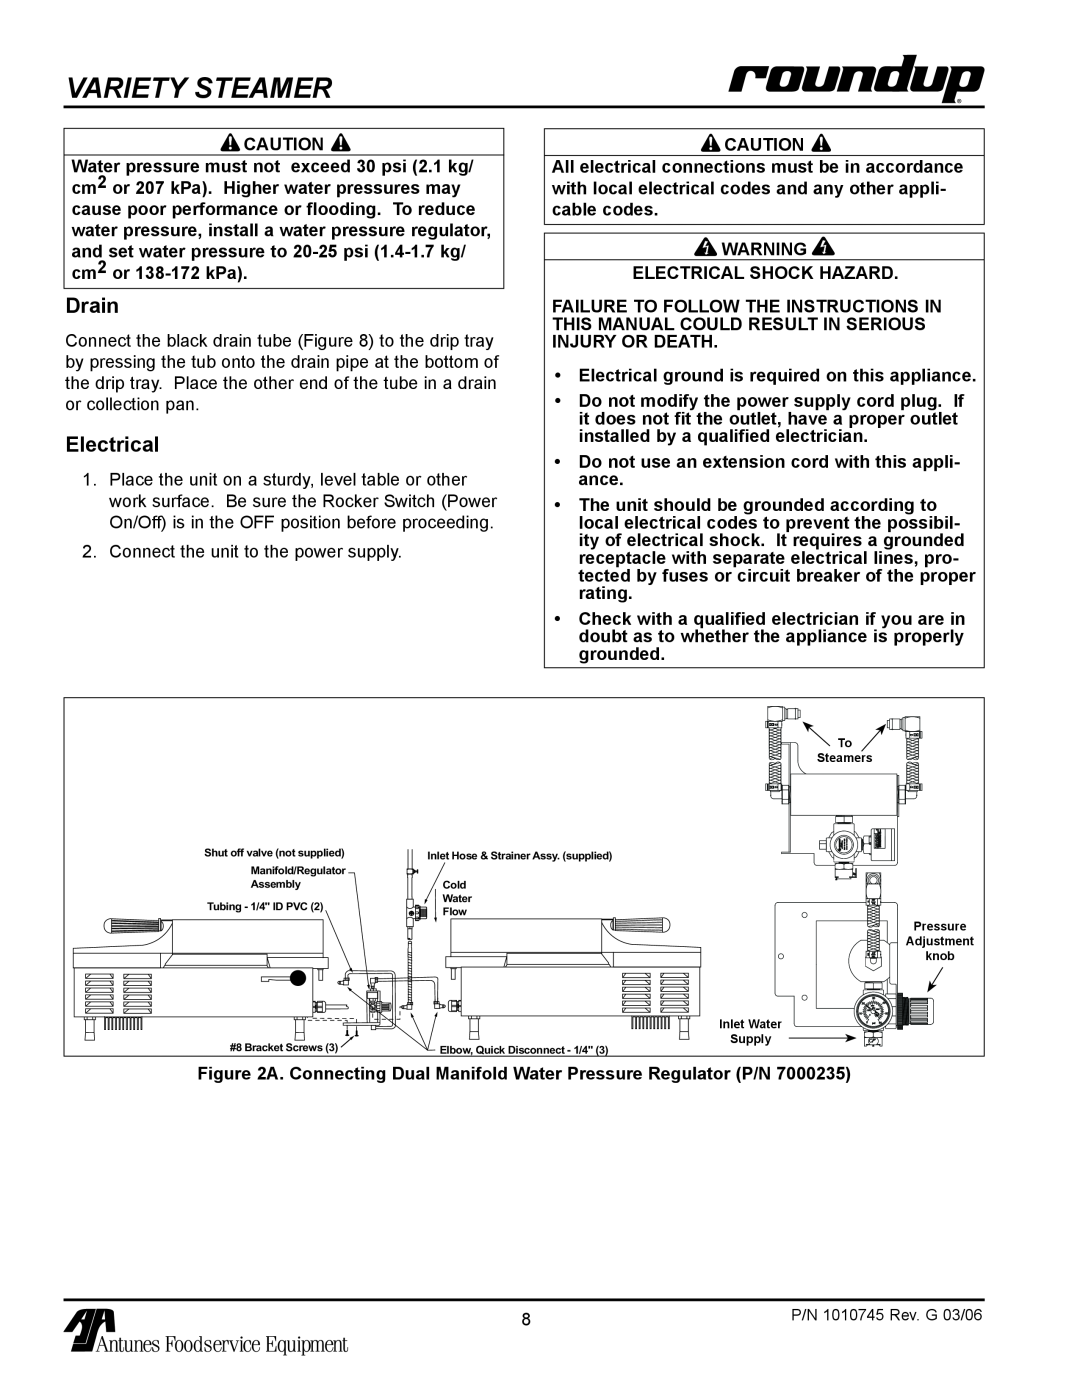 Antunes, AJ VS-350 owner manual Variety STeamer, Drain, Electrical 